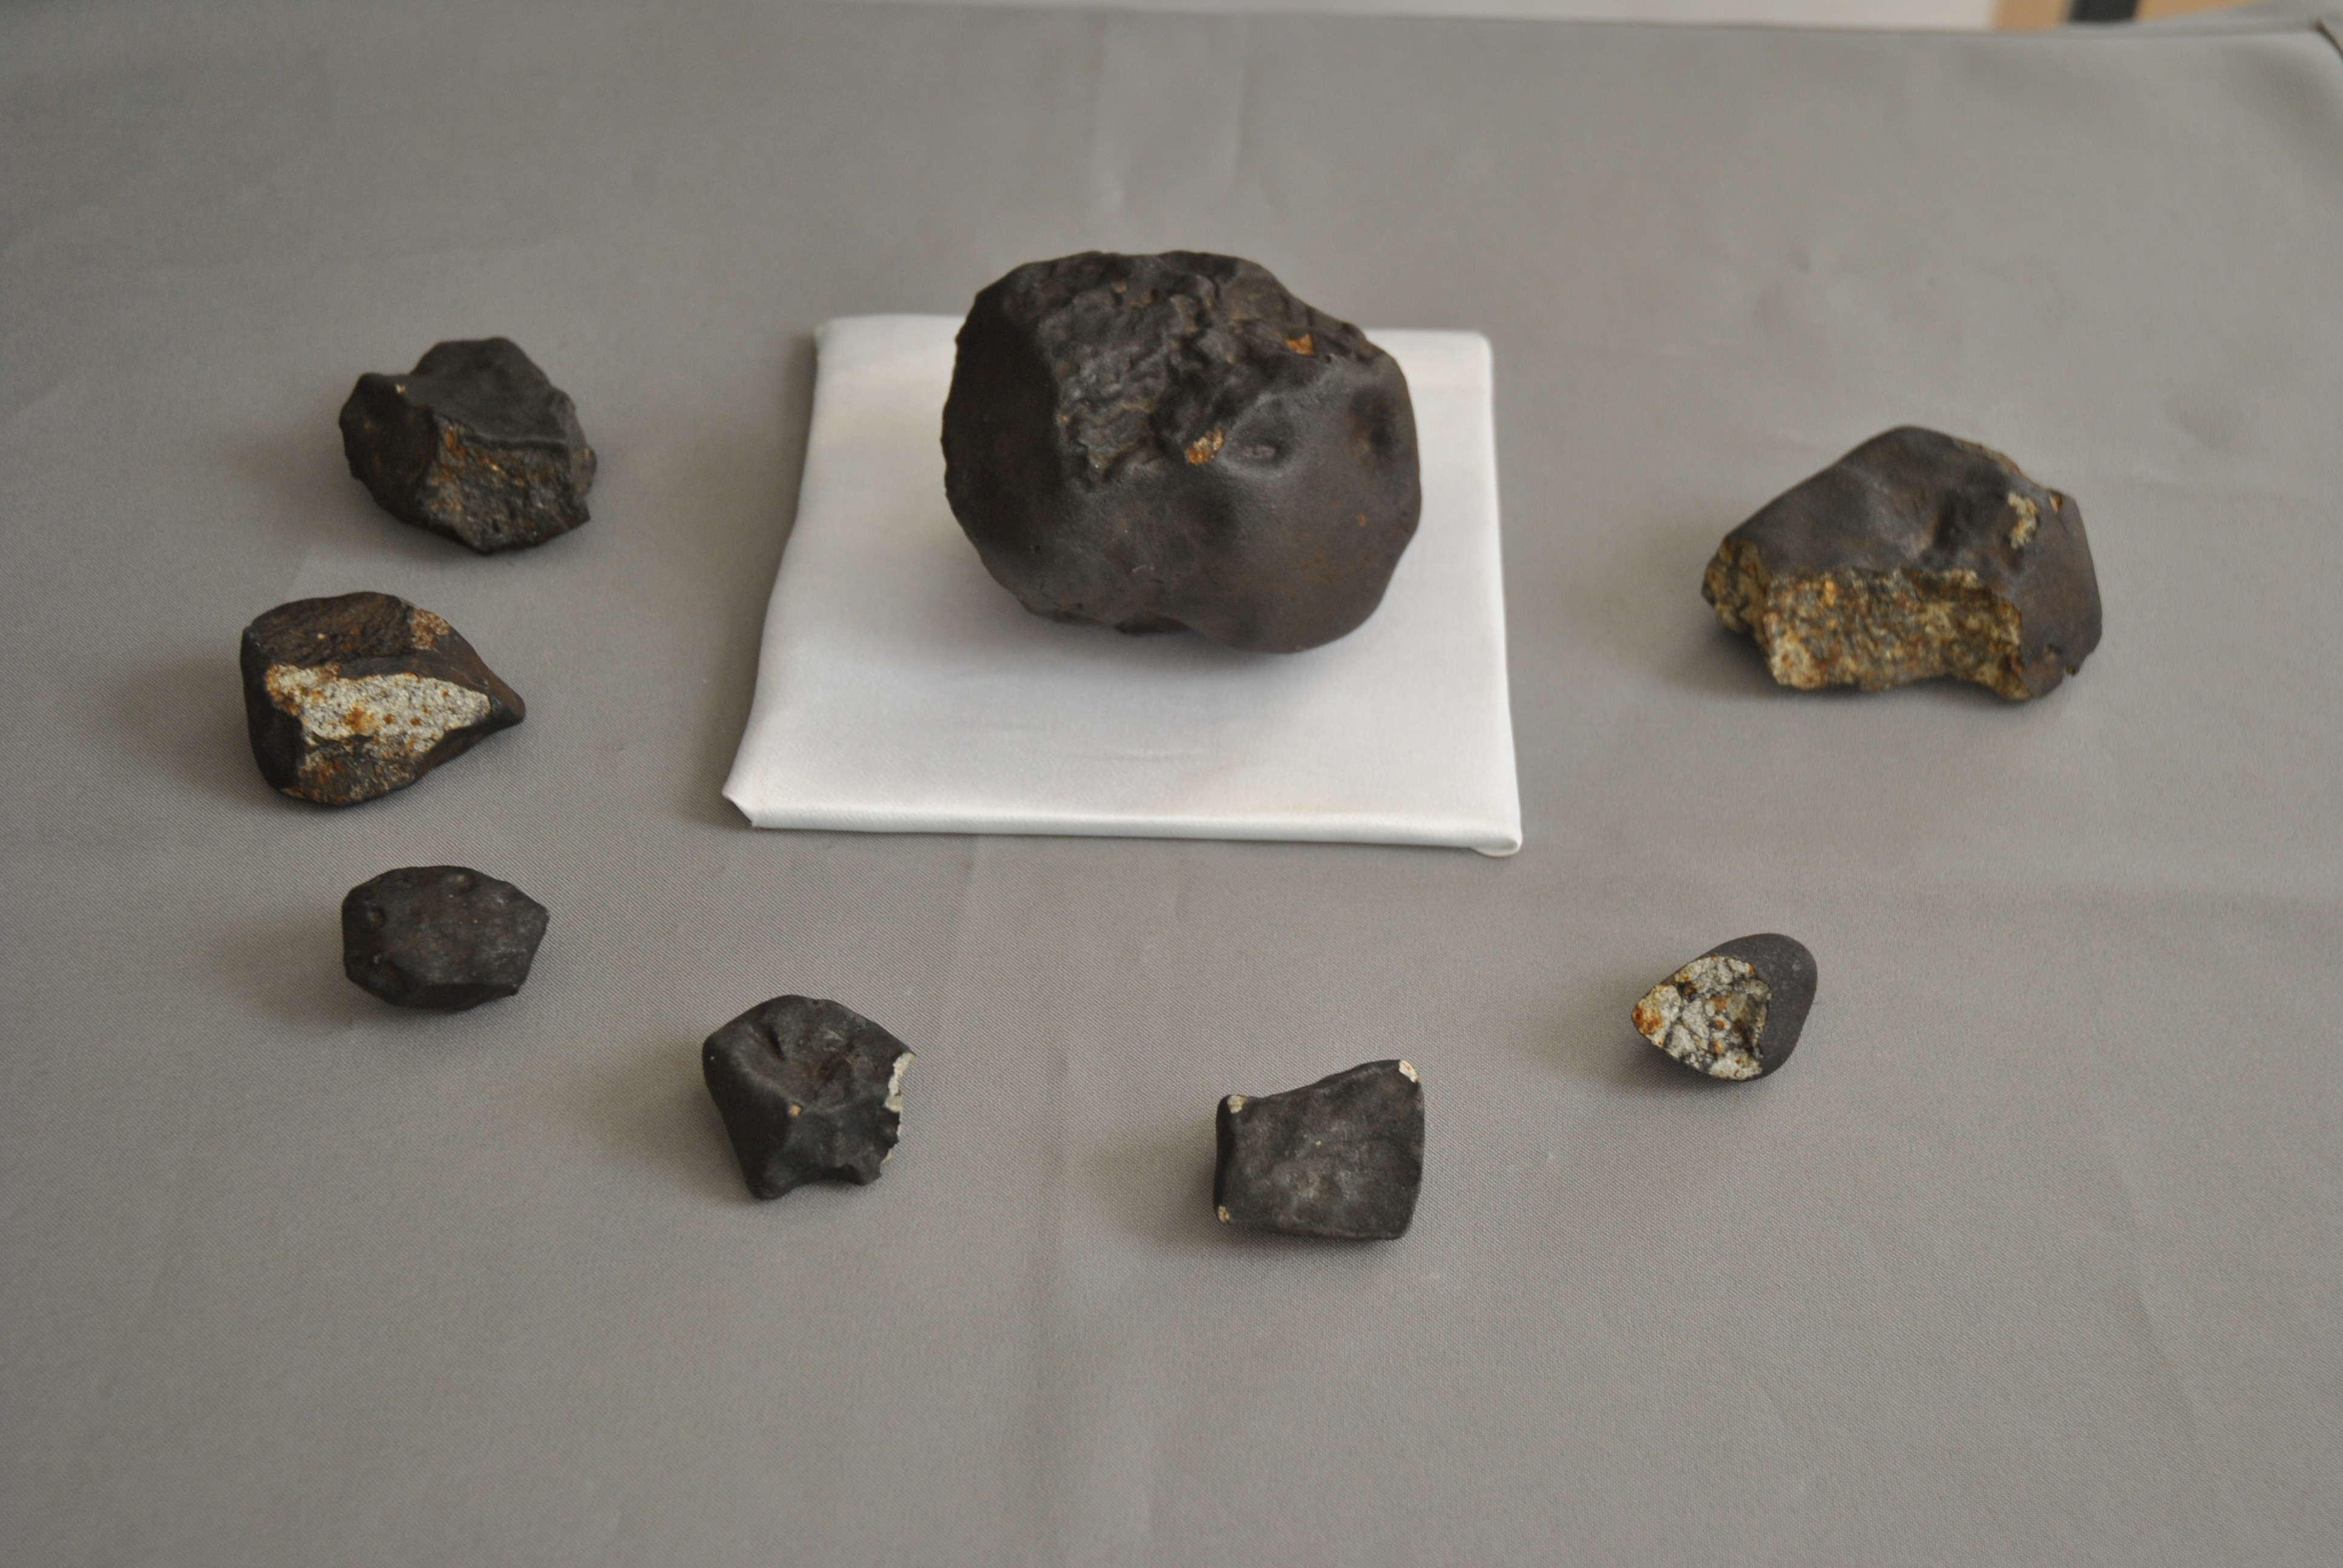 Челябинский метеорит сталкивался с другим астероидом перед падением на Землю - эксперты